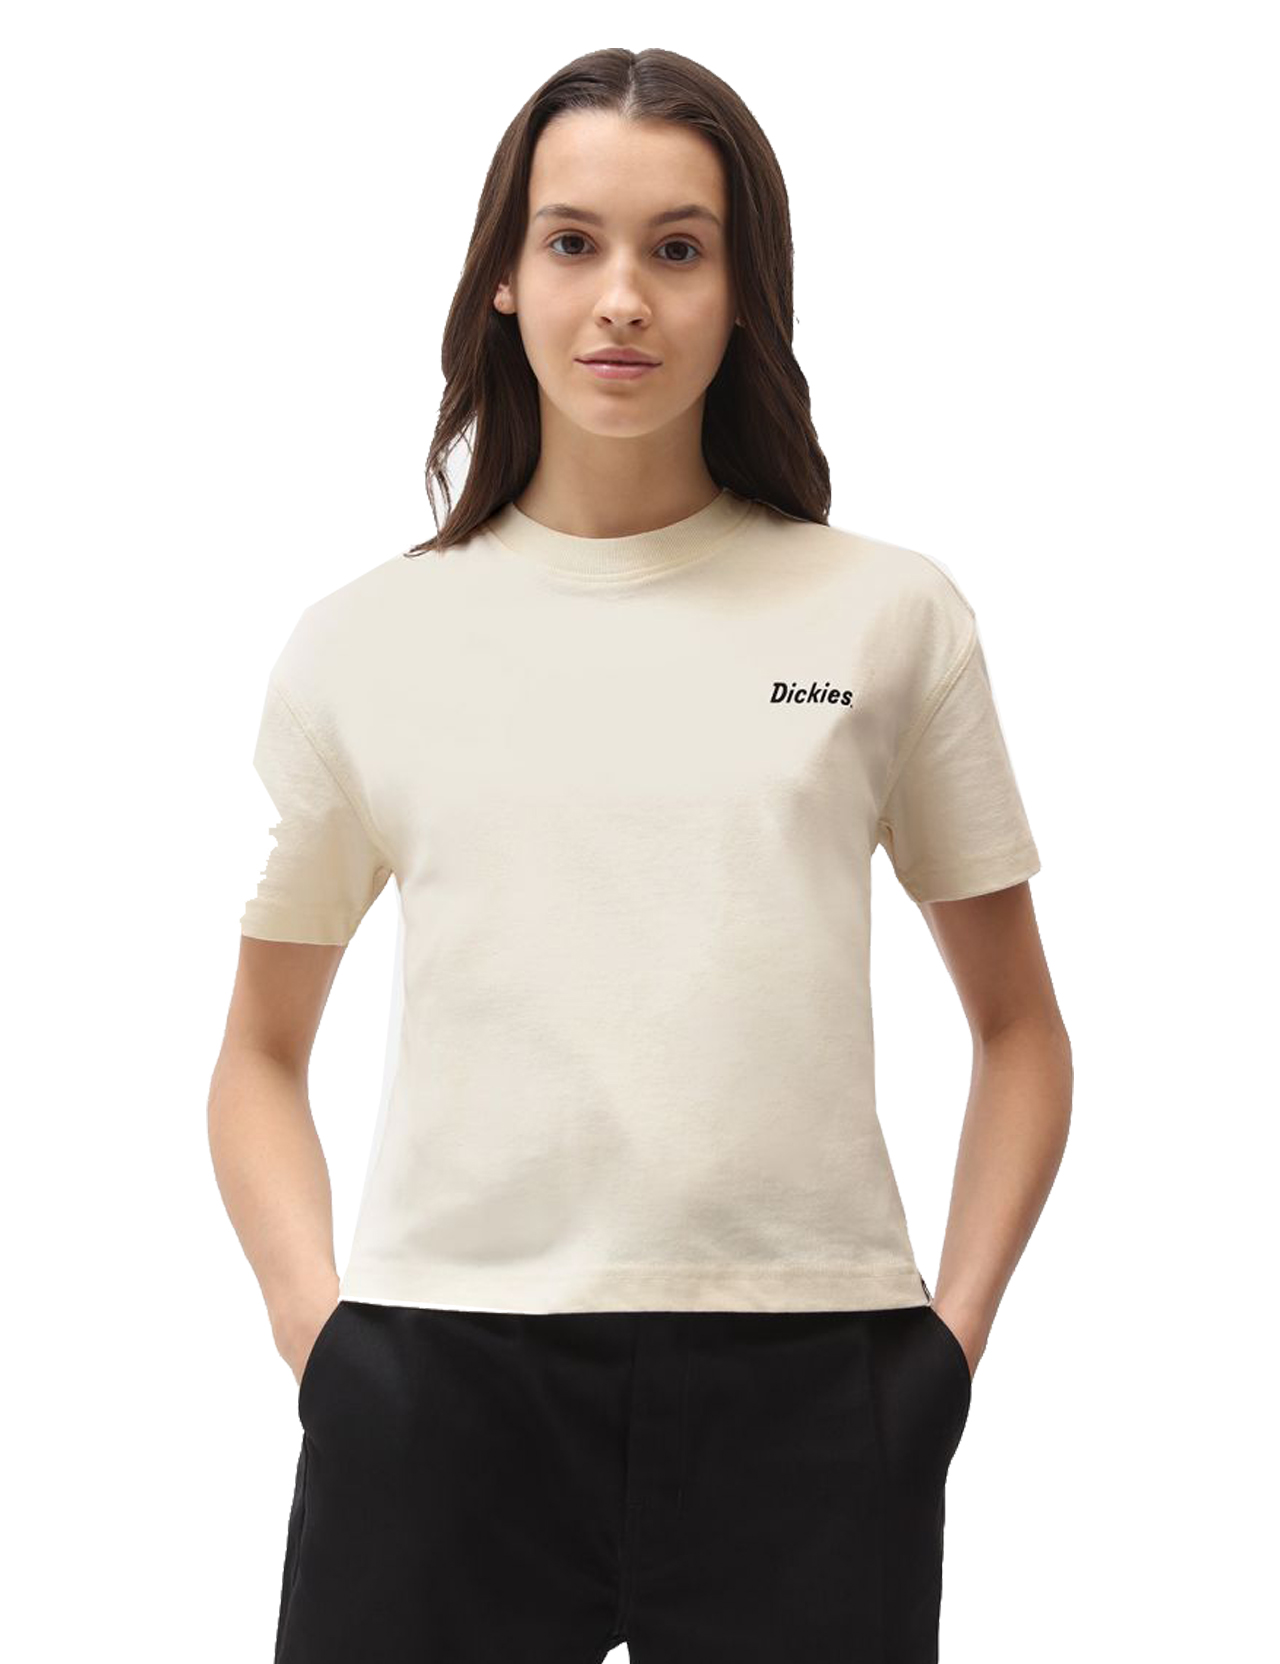 Dickies - Womens Bettles T-Shirt - Ecru